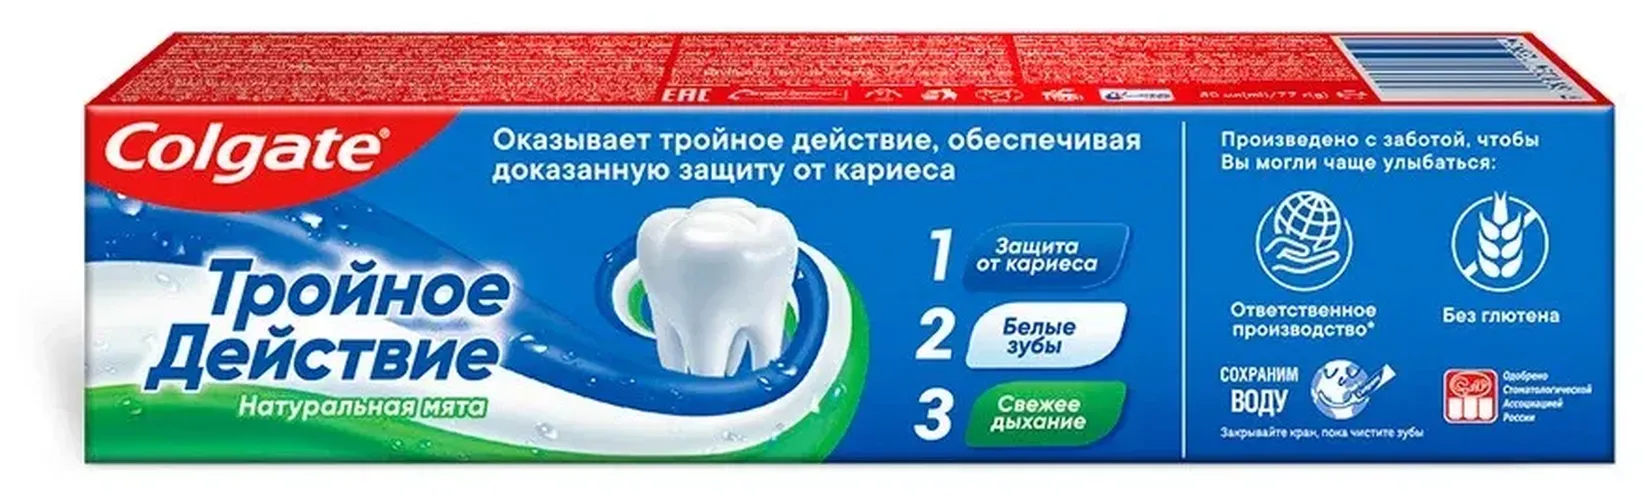 Зубная паста Colgate Тройное действие Натуральная мята комплексная, 50 мл, купить недорого